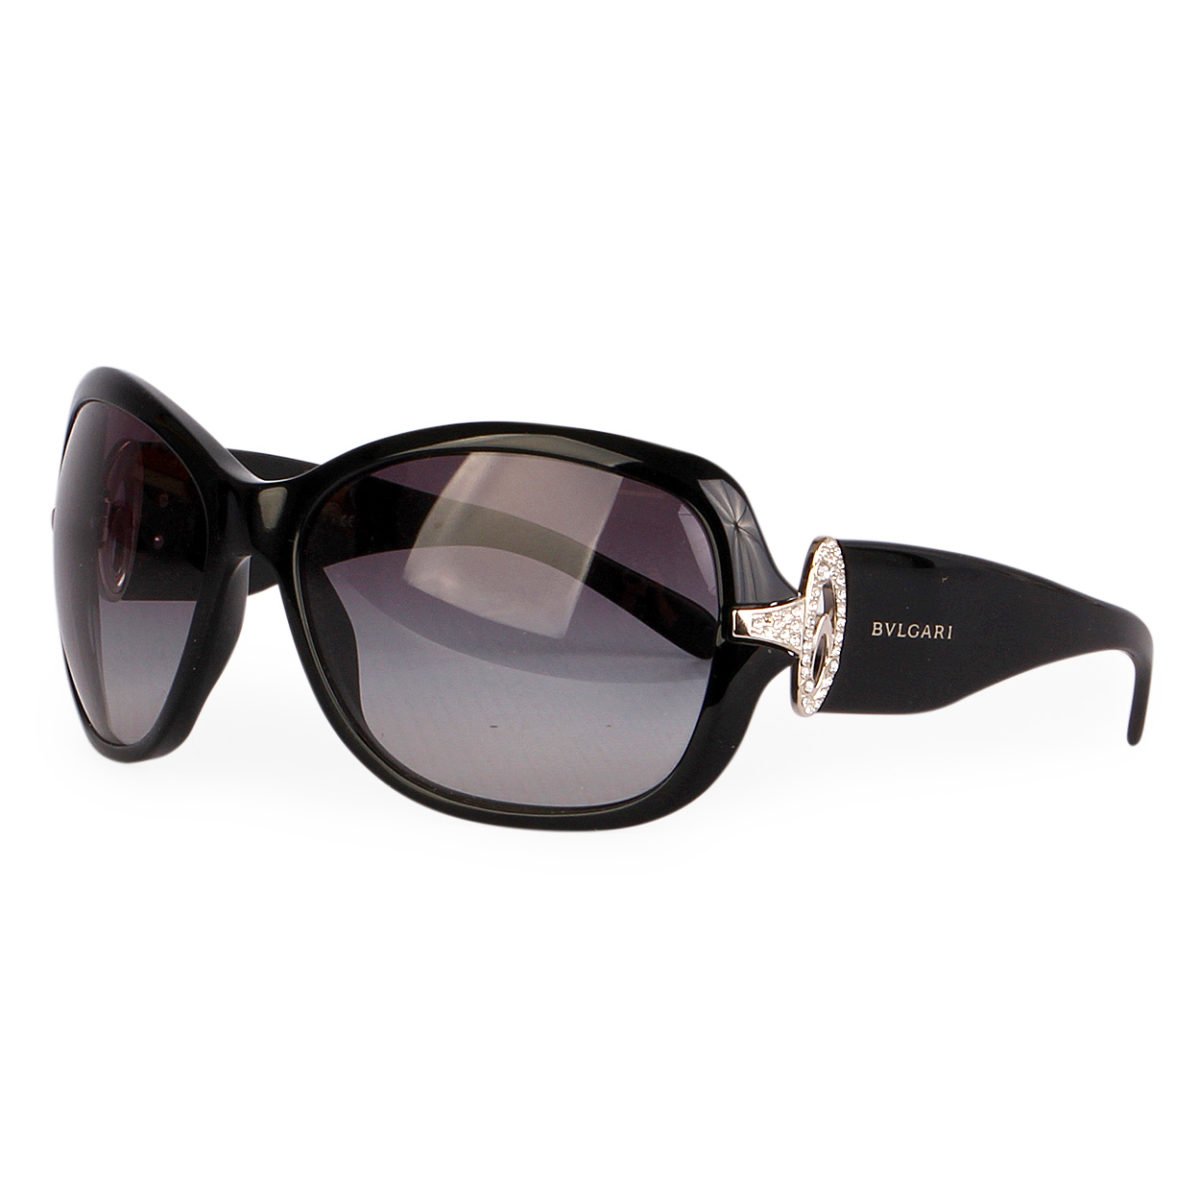 bvlgari sunglasses with rhinestones